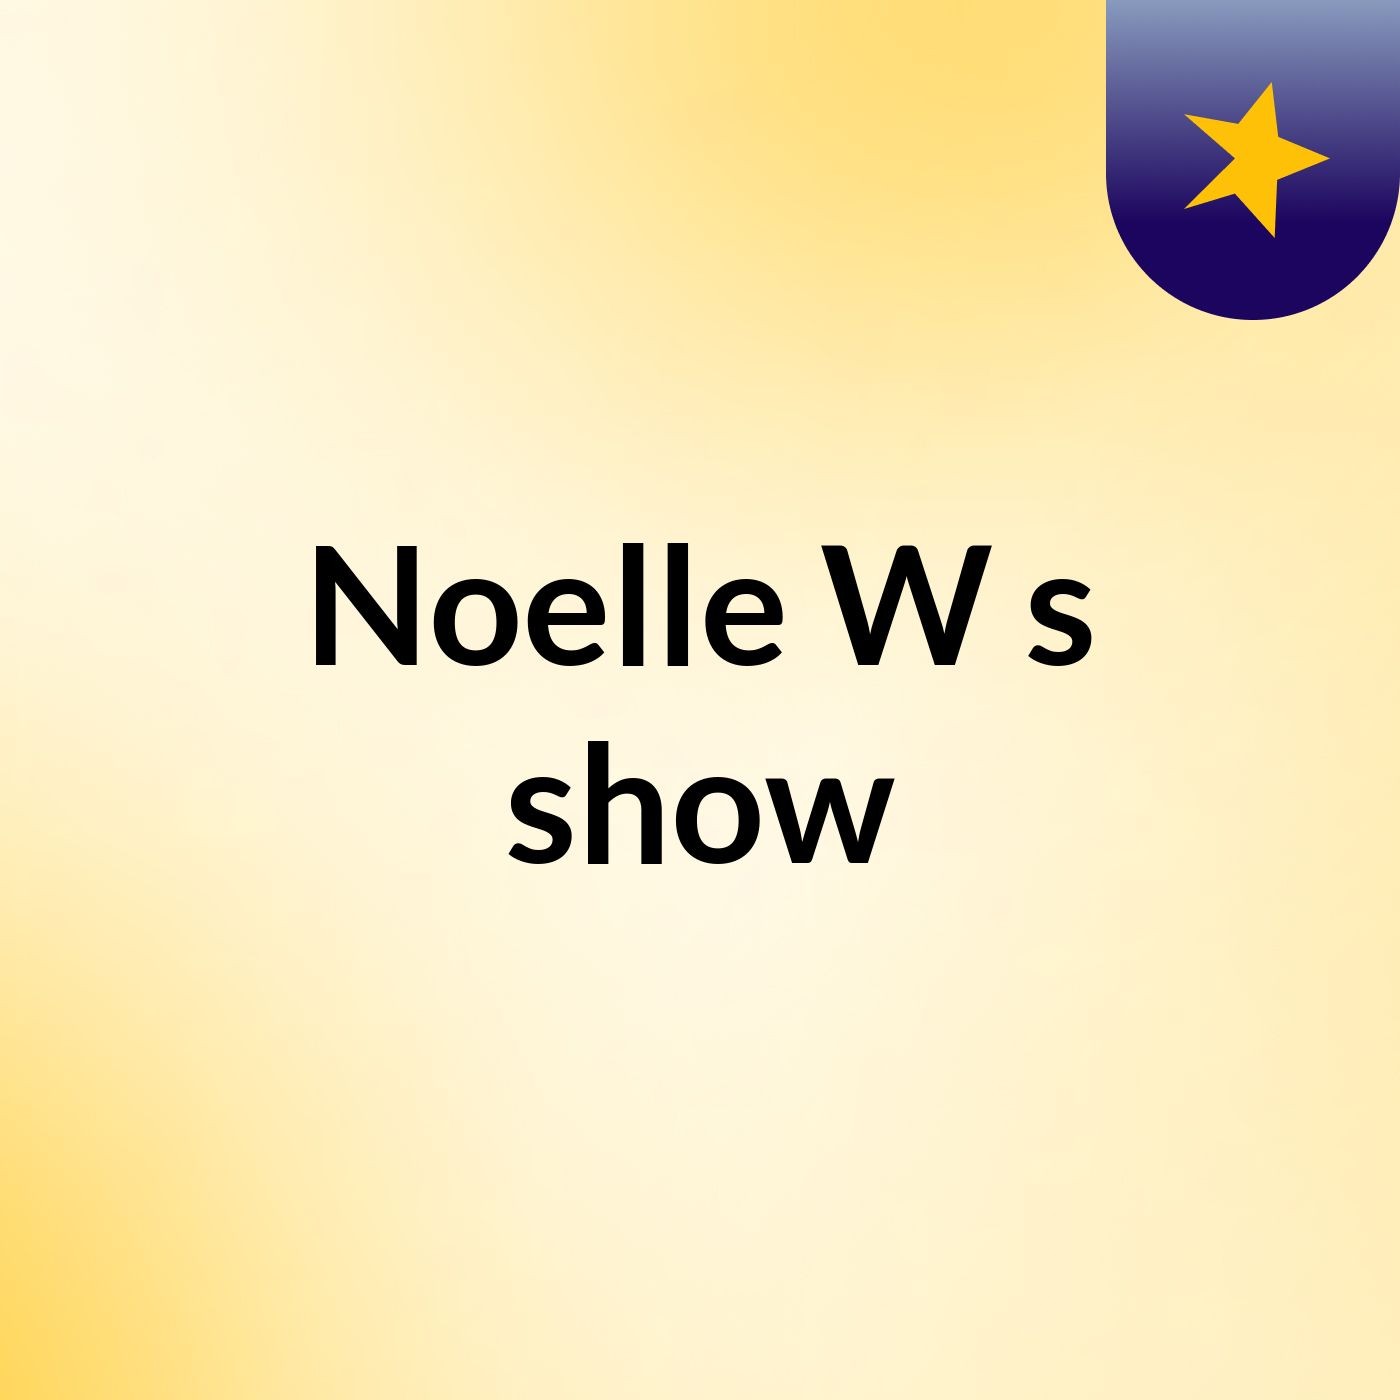 Noelle W's show